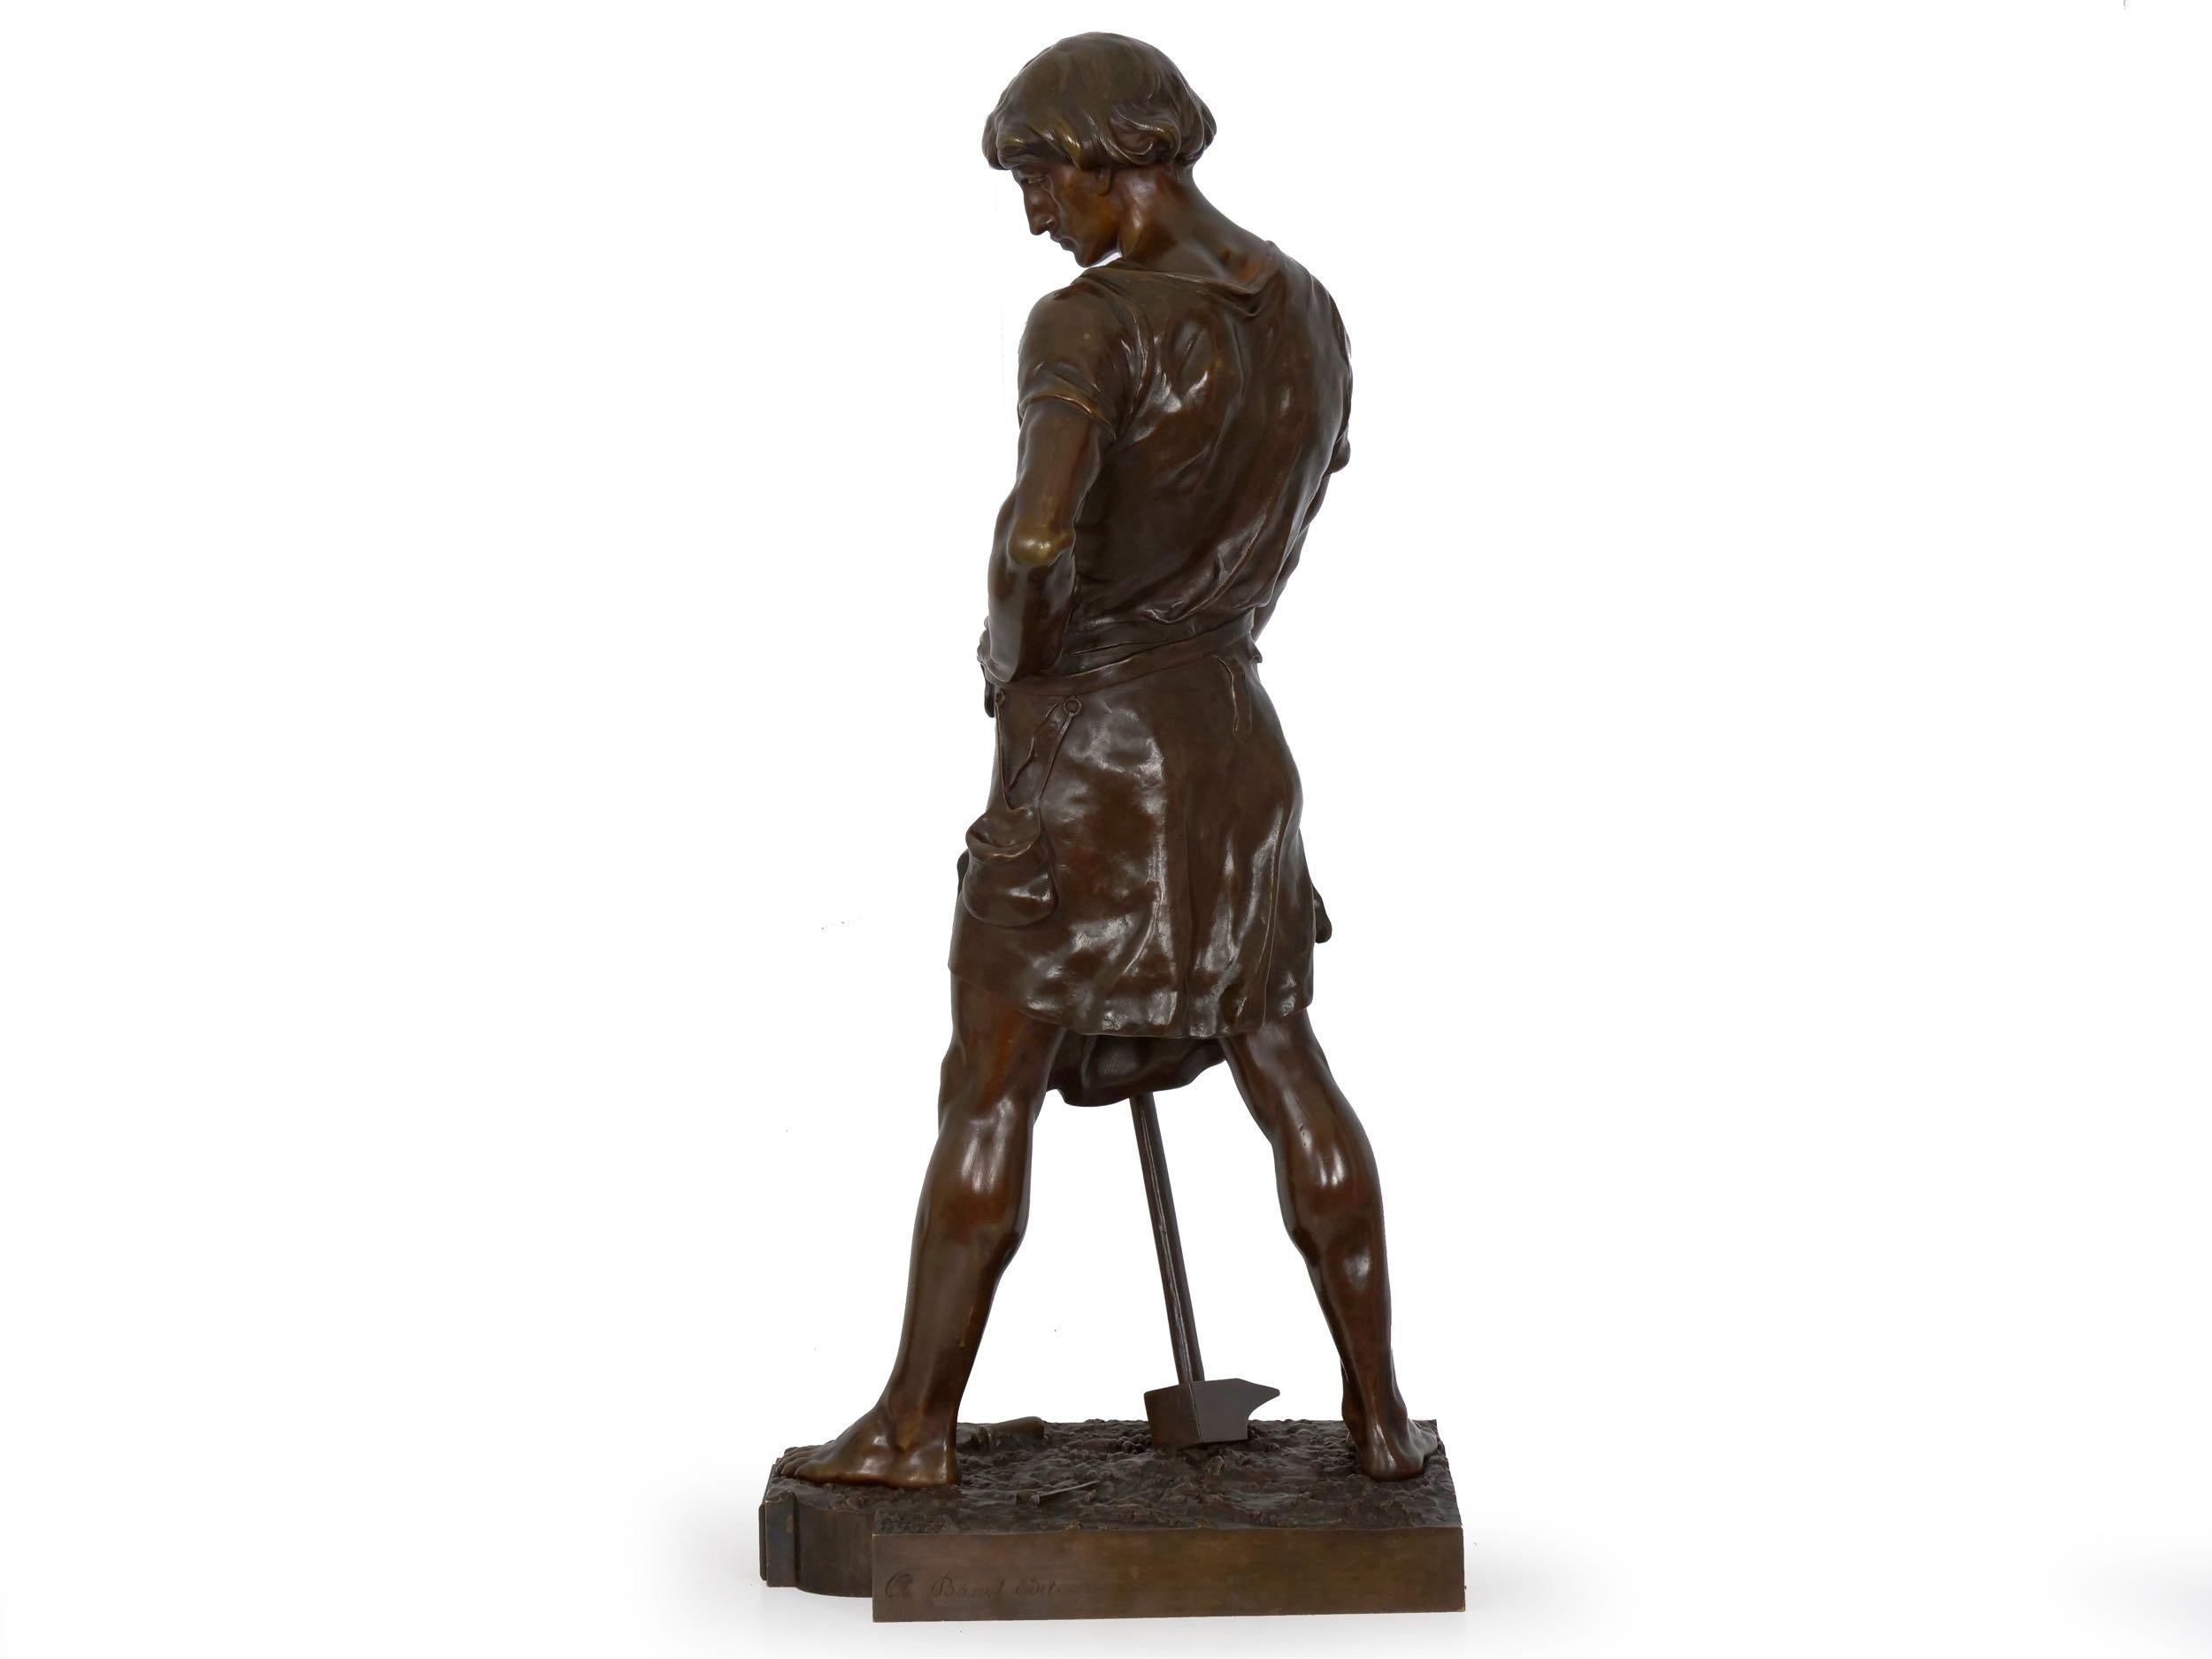 19th Century French Antique Bronze Sculpture “Pax et Labor” by Emile Picault 1